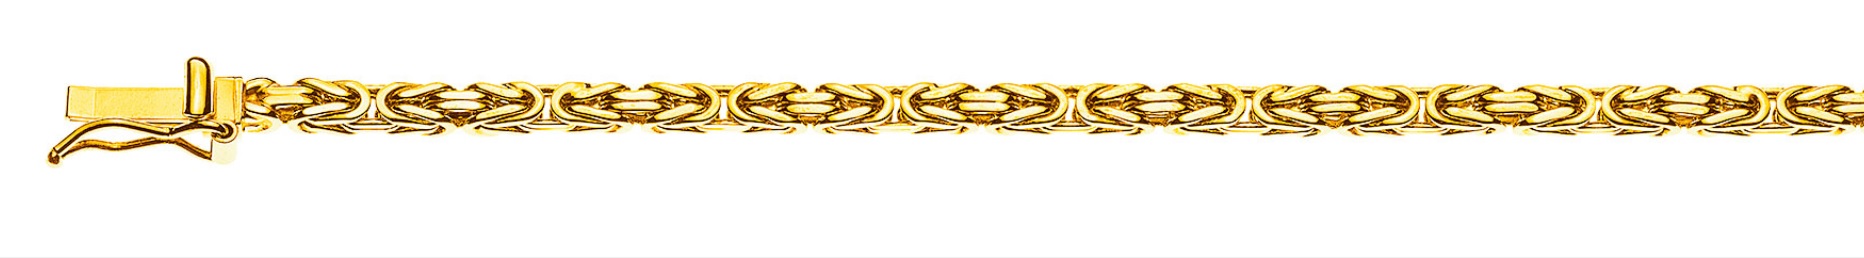 AURONOS Prestige Collier en or jaune 18K chaîne royale 45cm 2.5mm